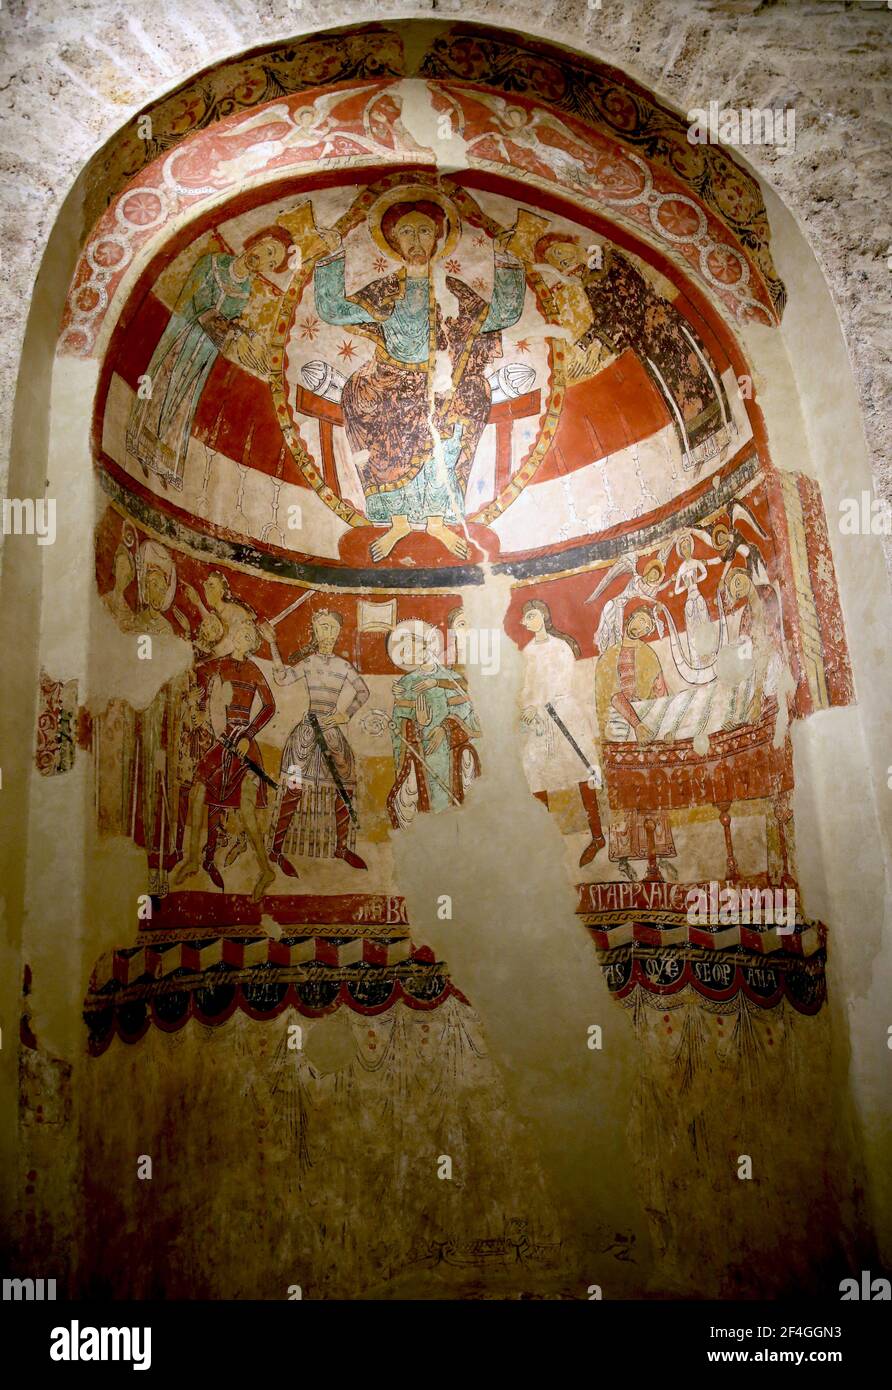 Martirio di Thomas Becket (1170) pittura fresco. Arte romanica, secoli 12 °-13 °. Chiesa di Santa Maria di Terrassa. Catalogna, Spagna. Foto Stock